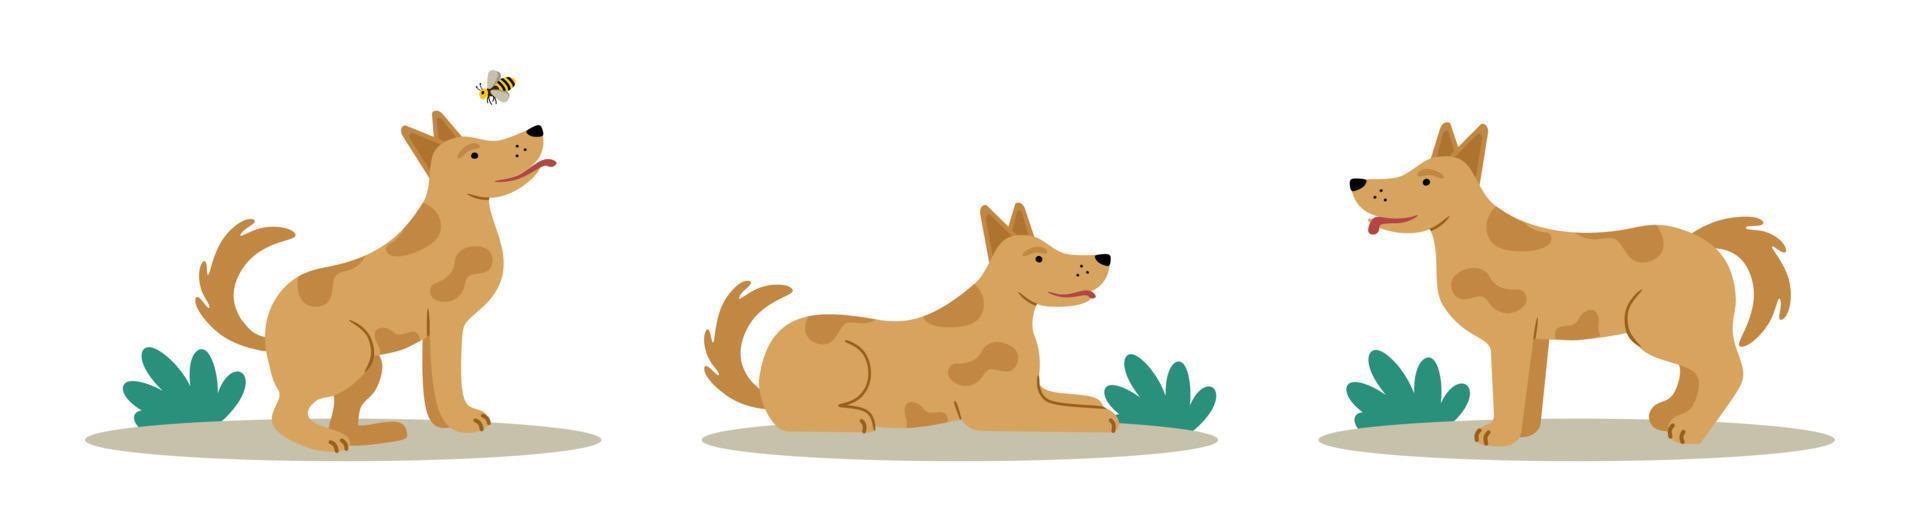 el perro es una linda mascota alegre en diferentes poses. ilustración vectorial editable vector